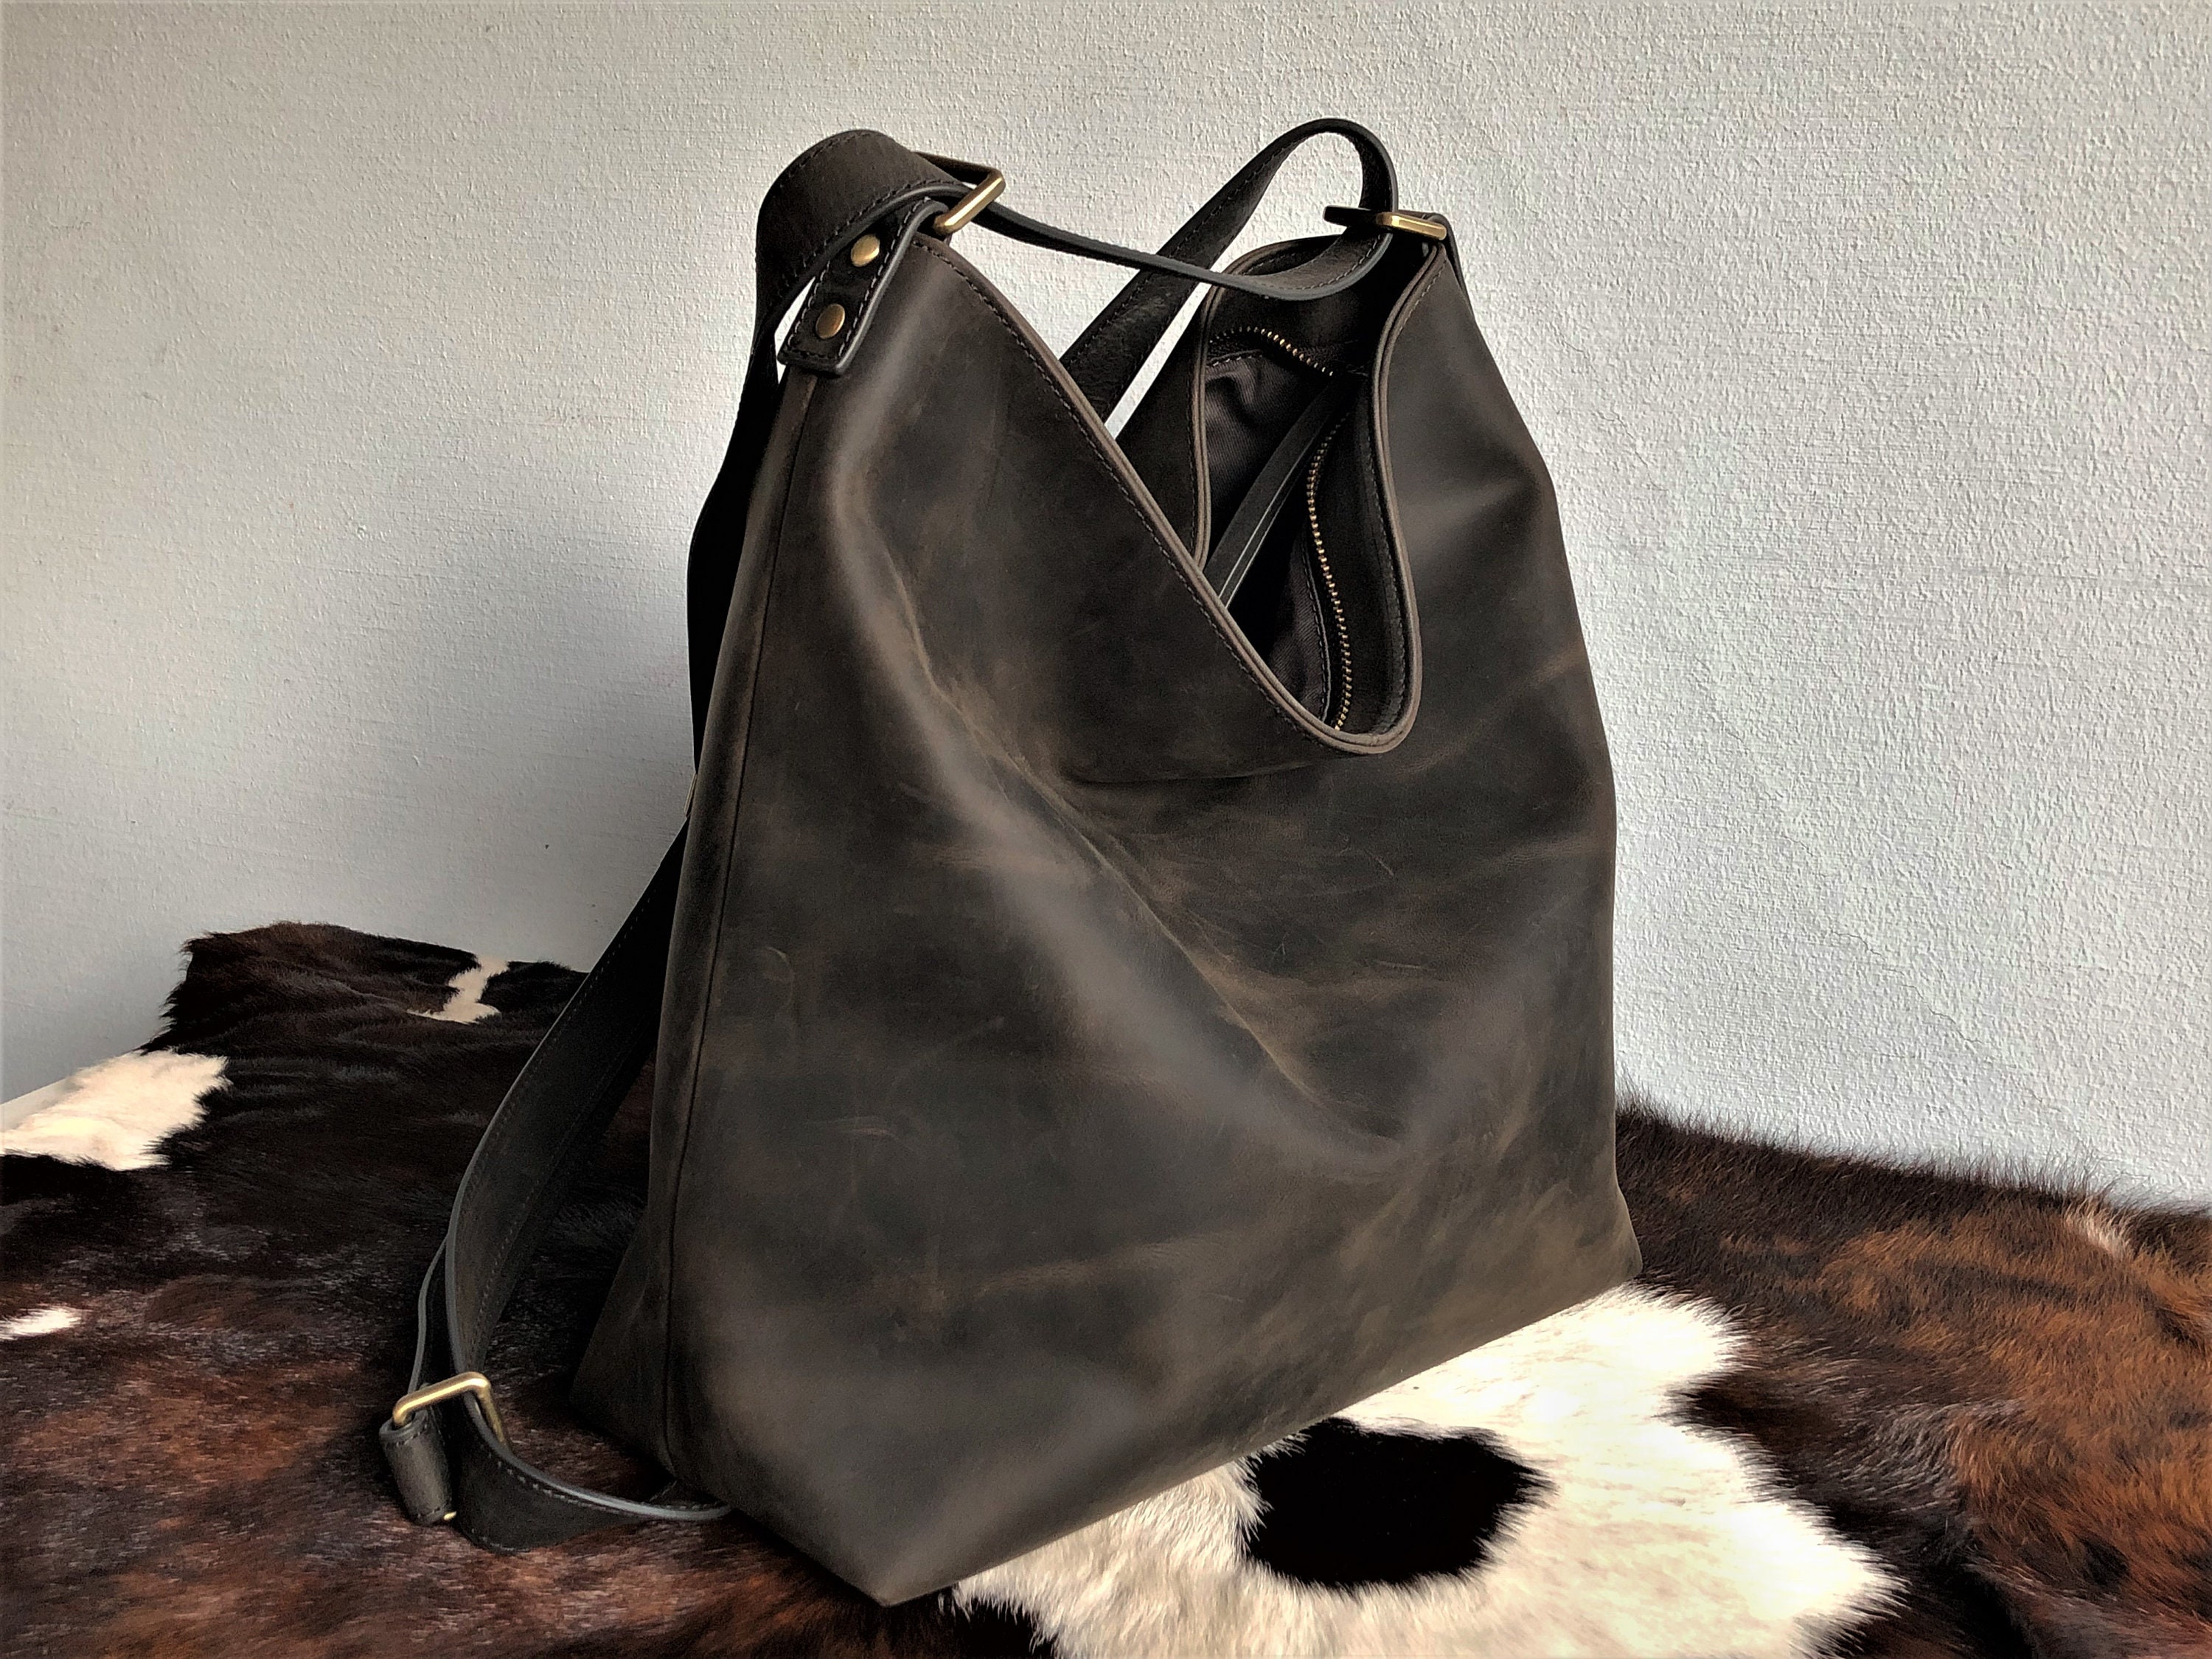 Convertible Backpack Leather Shoulder Bag Black Bag -  Norway